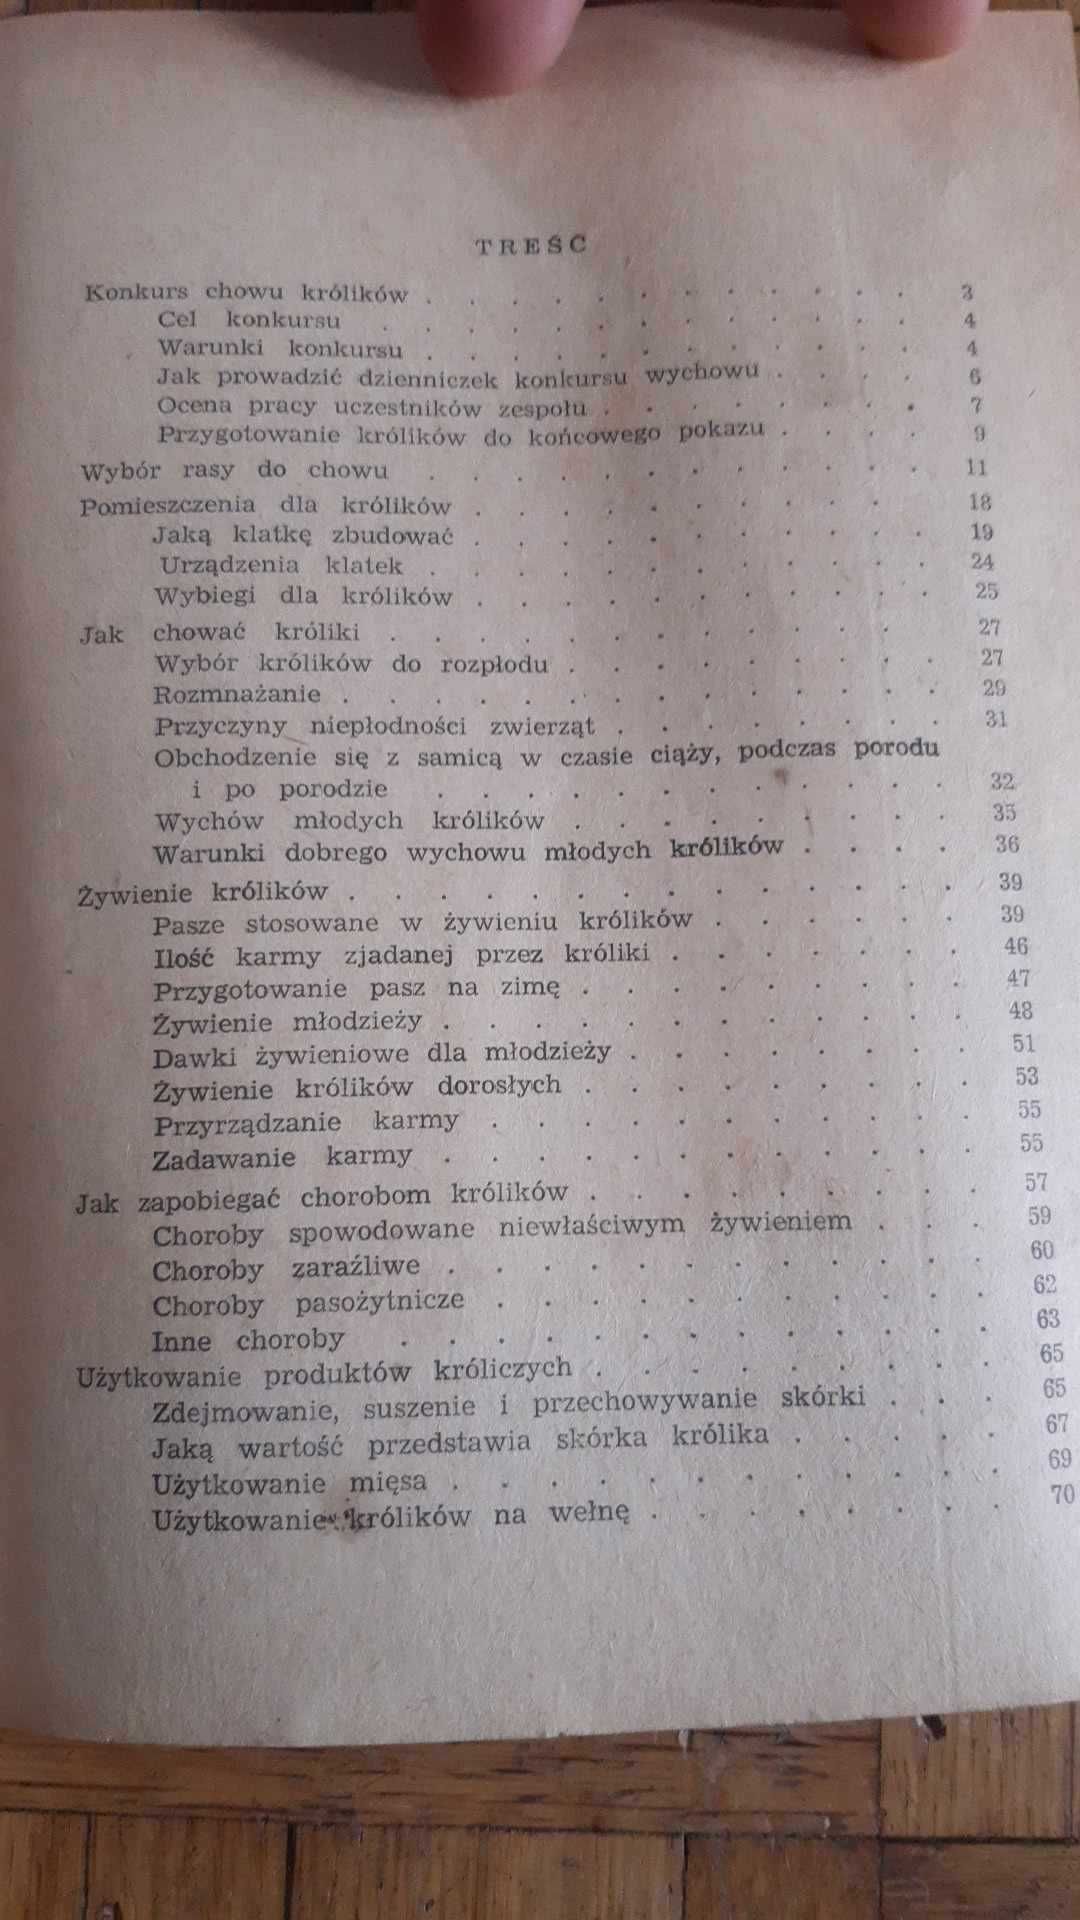 J. Szklarzewicz - Wychów królików.  PWRiL, 1960 r.